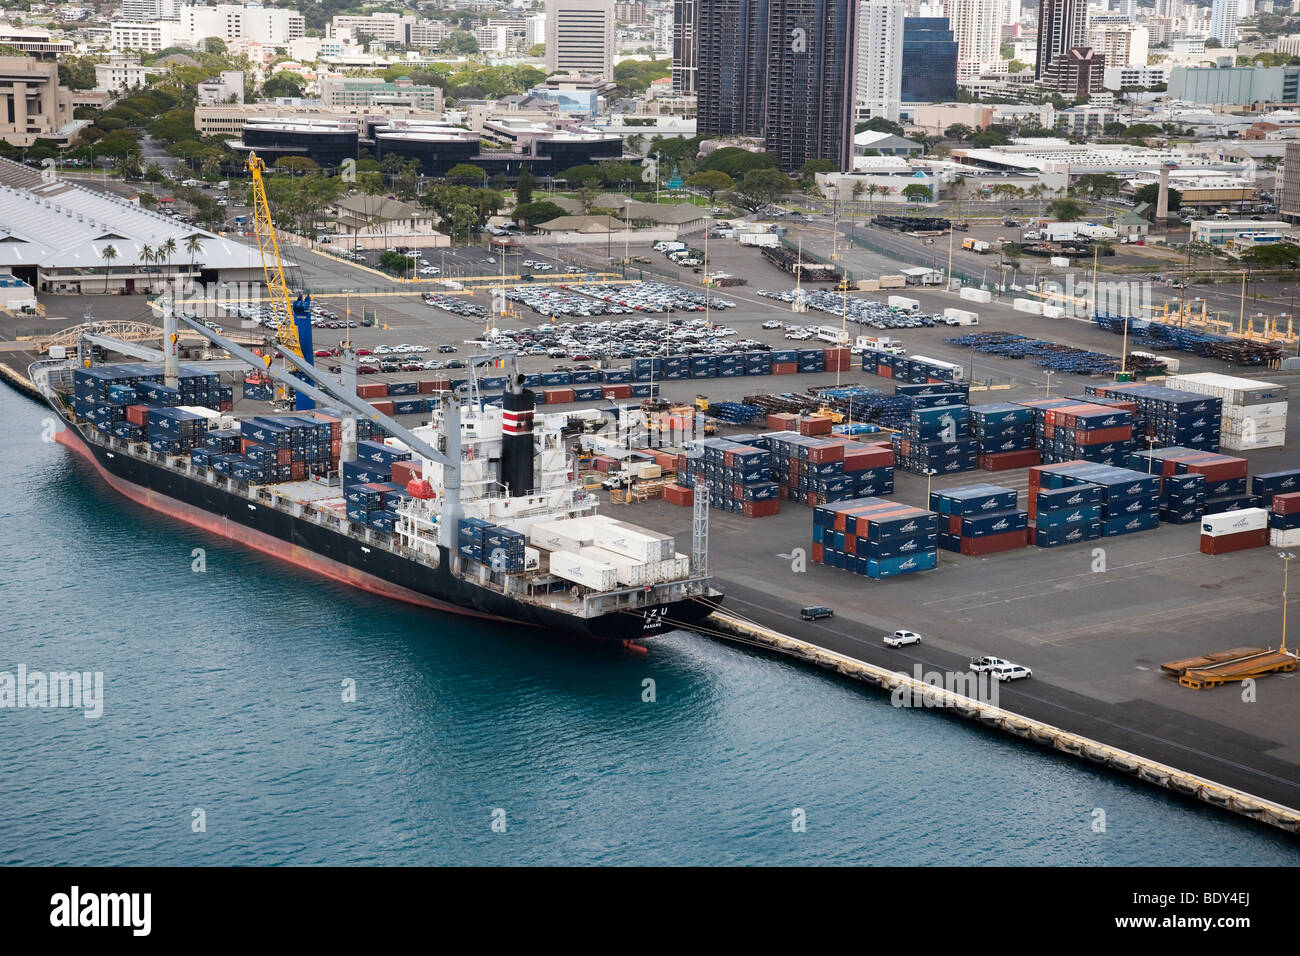 Vue aérienne du navire transportant du fret maritime conteneurisé et zone de manutention de conteneurs de l'île de Sable, Honolulu, Hawaï. Banque D'Images